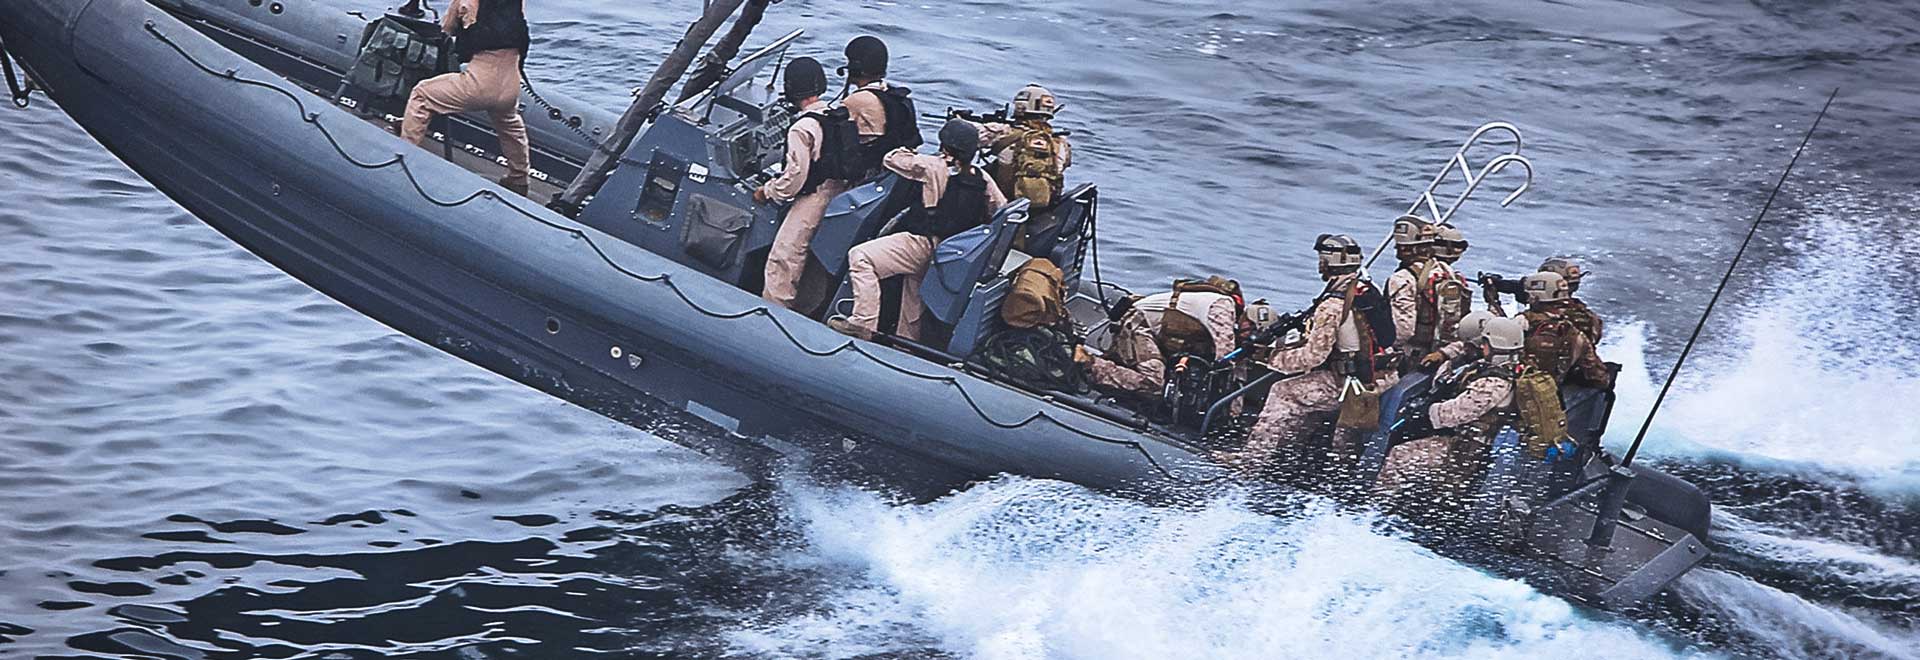 Marinheiros da marinha em barco de alta velocidade partindo para uma missão